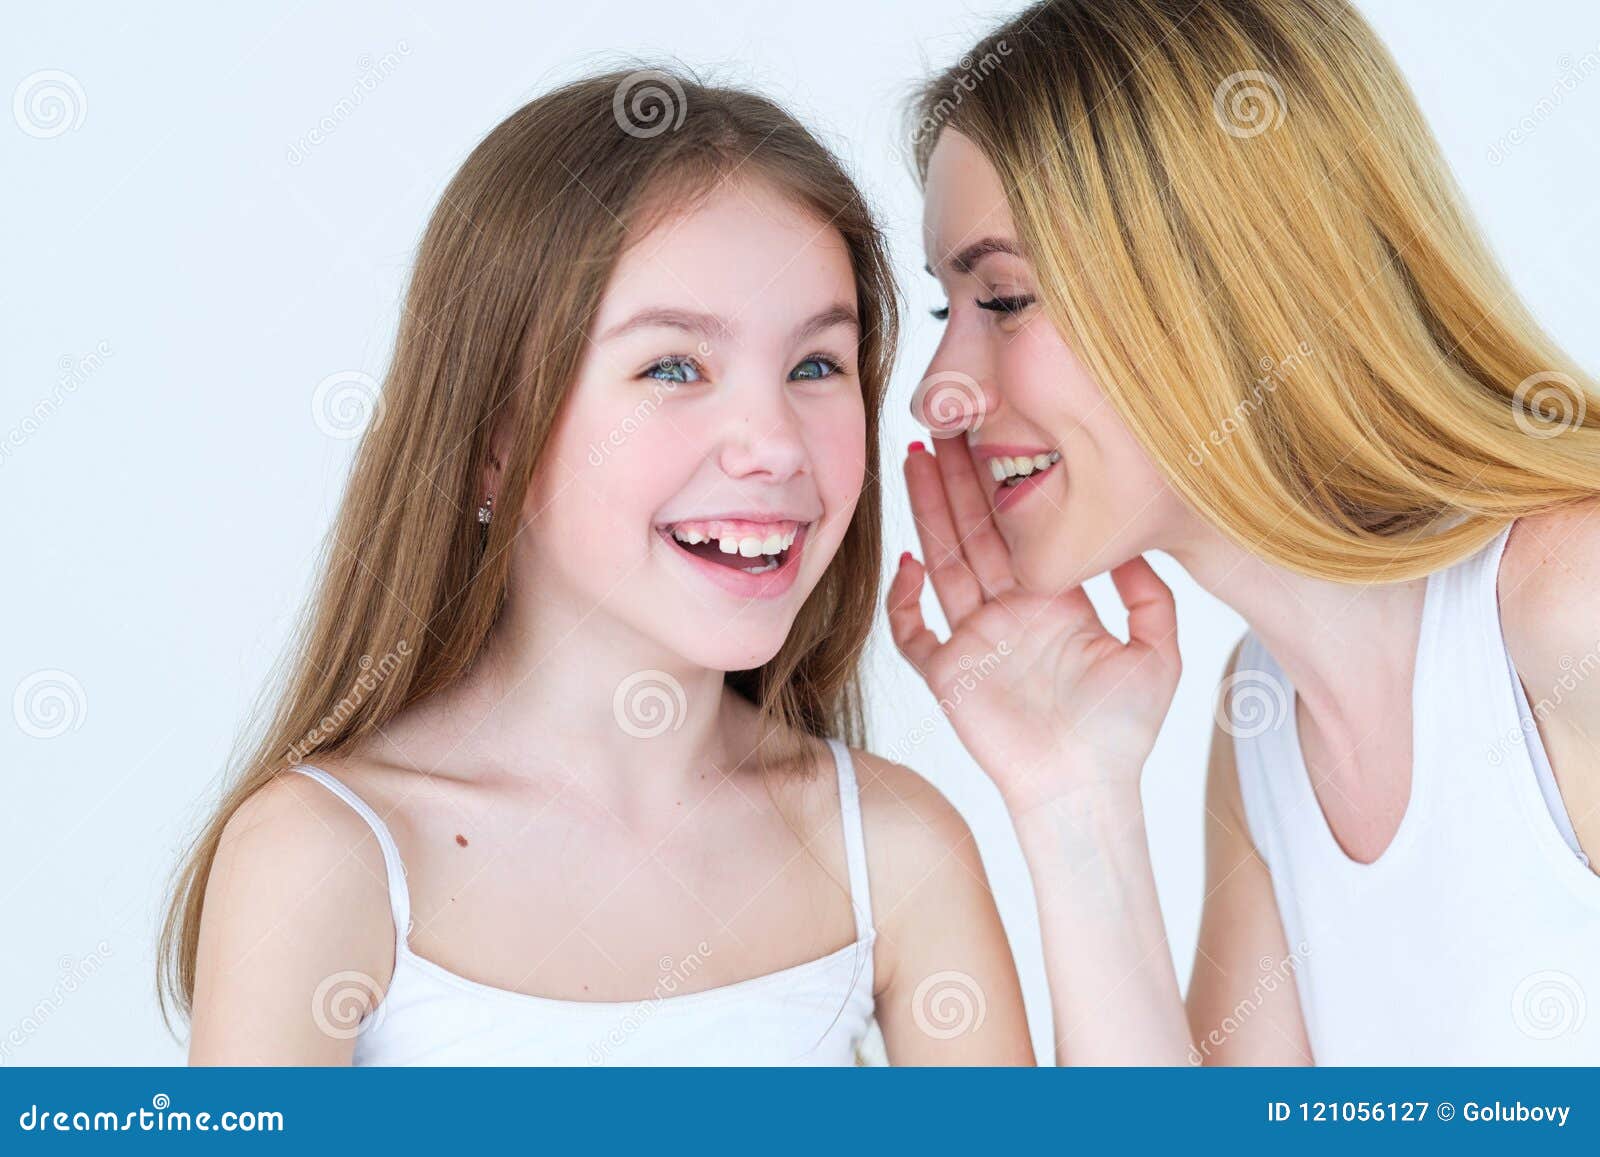 Сестру врот. Обмен мамами. Доверие дочь шепчет на ухо маме. Mother Whispering to daughter.